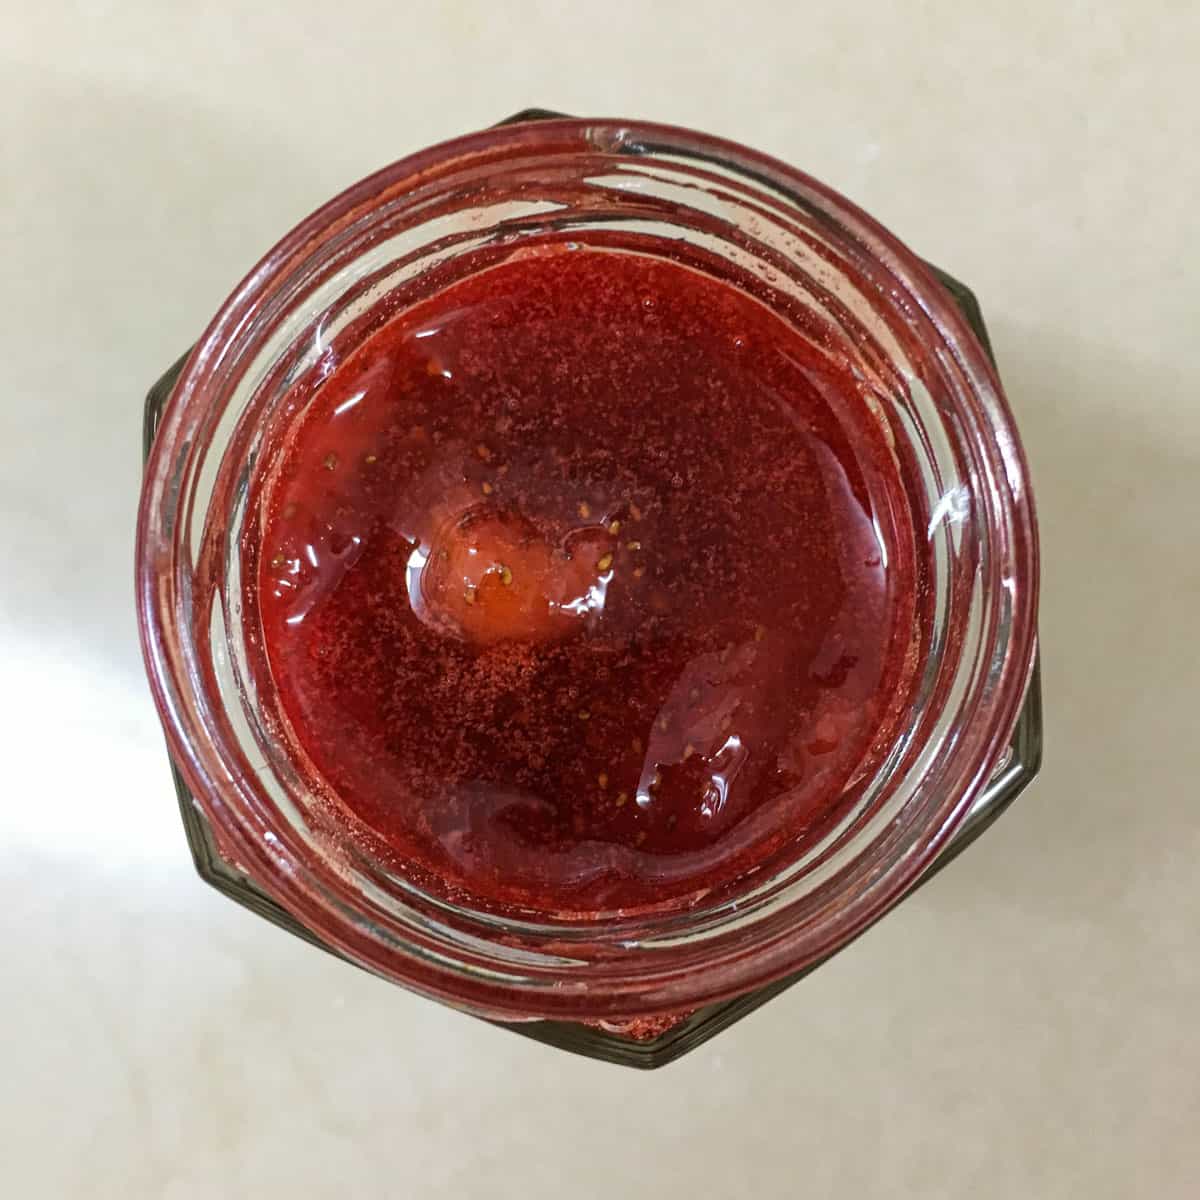 Top view of a jar jam.